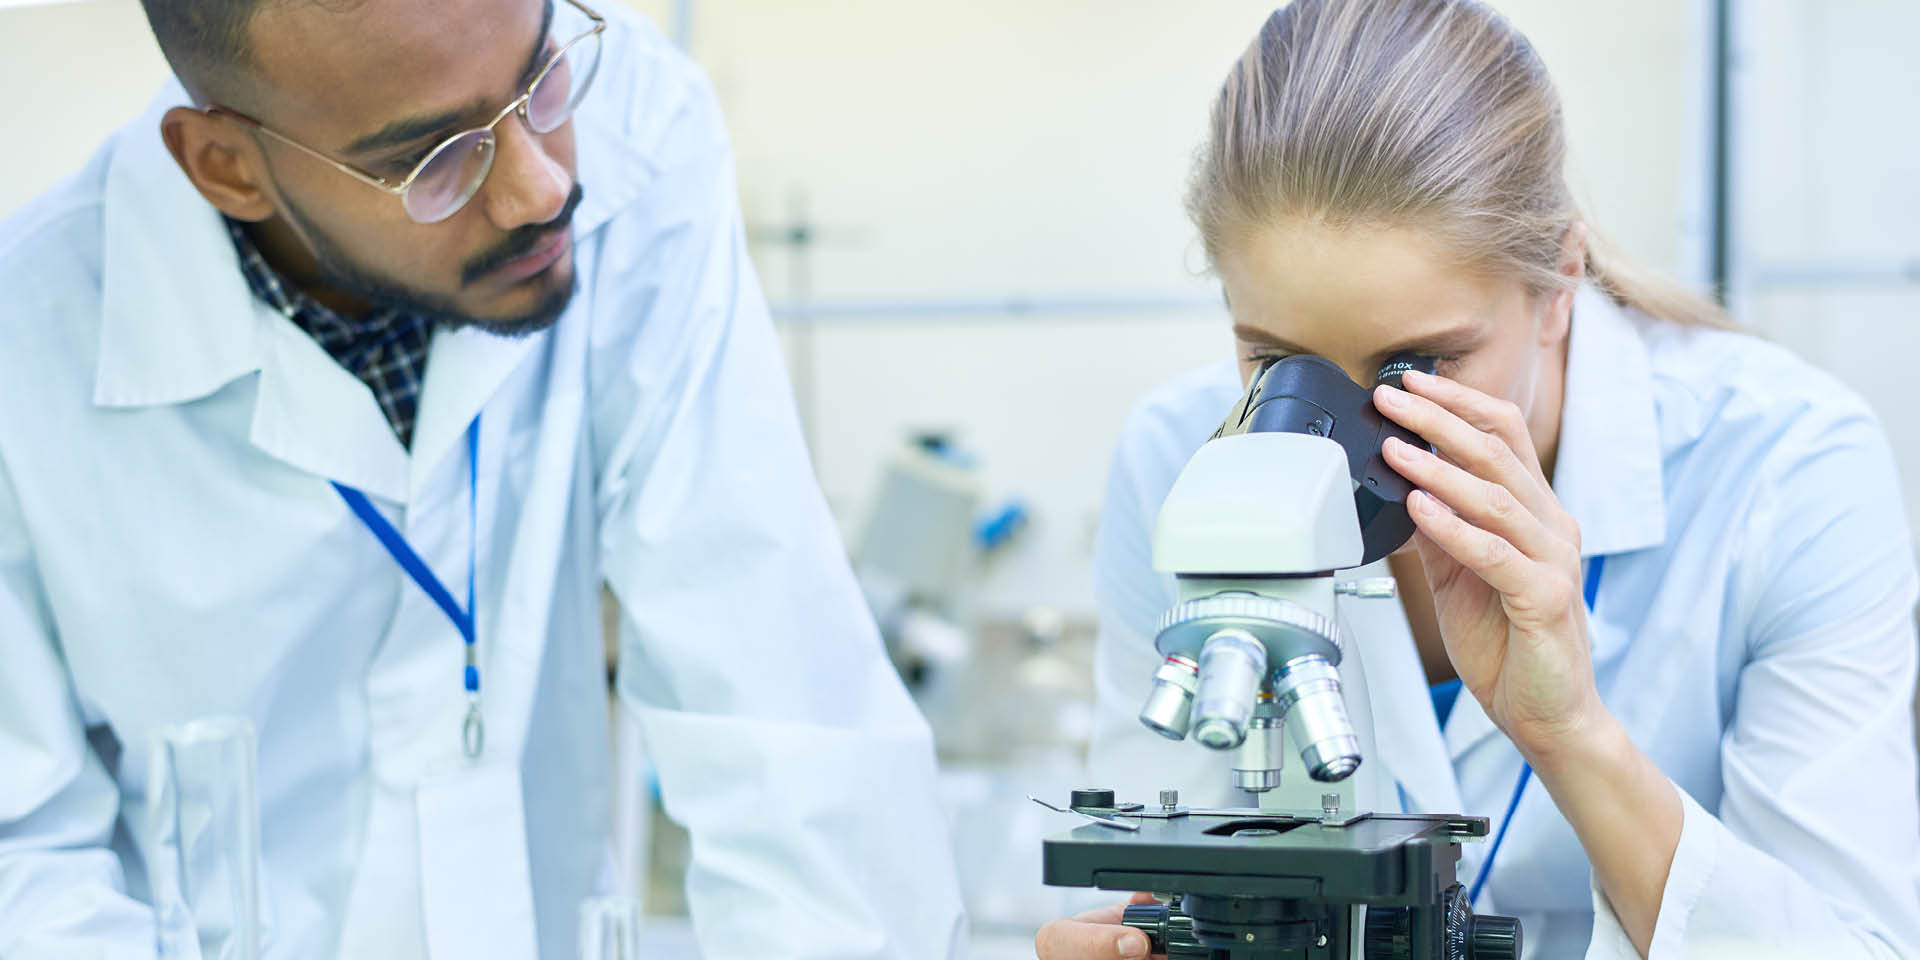 Eine Laborarbeiterin schaut durch ein Mikroskop, ein Laborarbeiter steht neben links neben ihr.